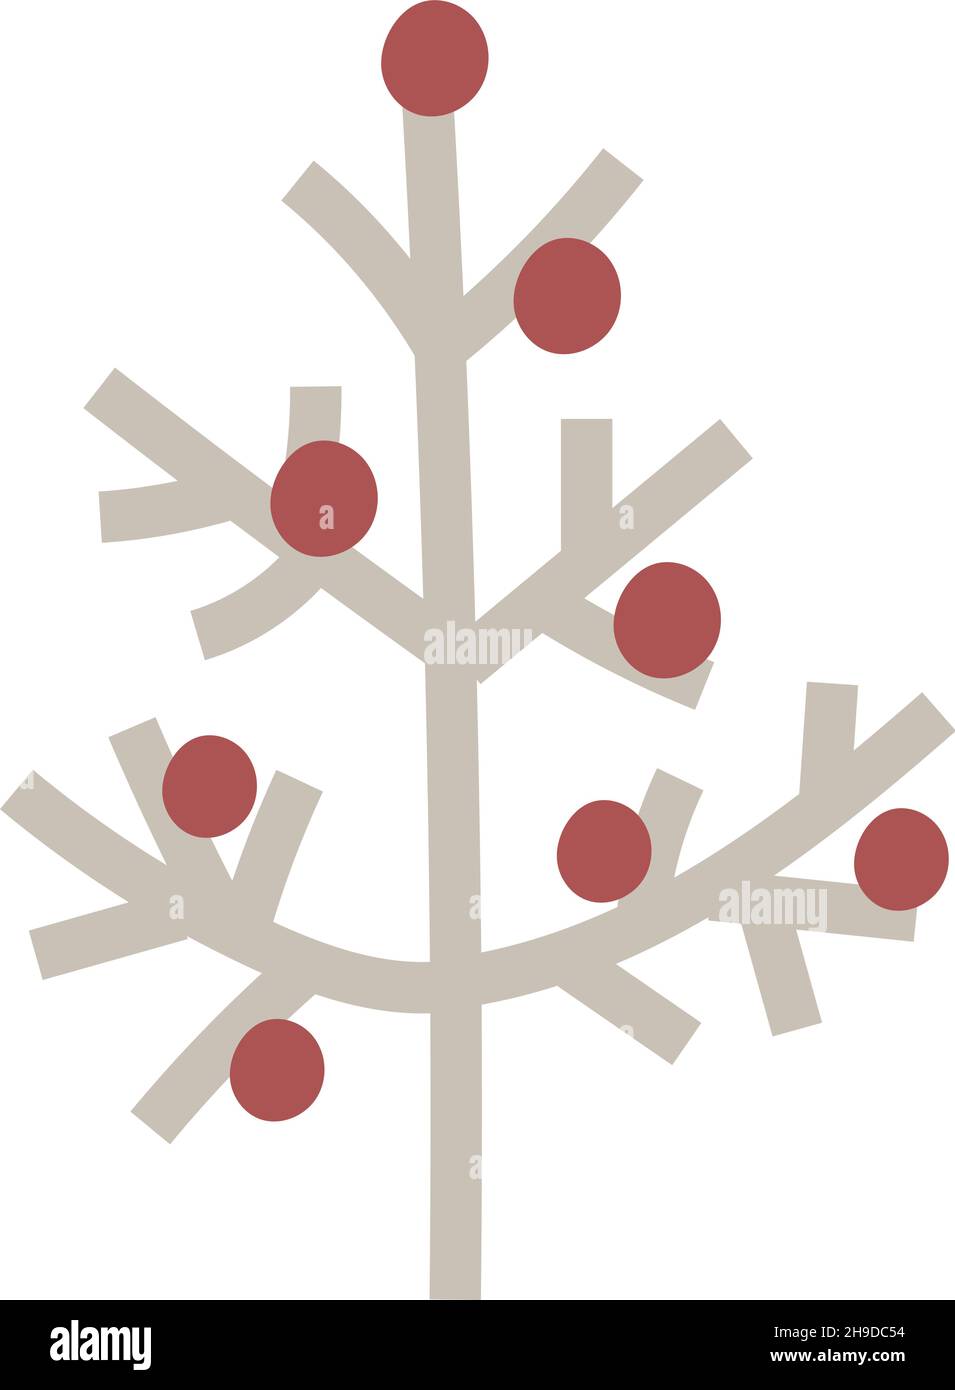 Árbol de Año Nuevo en estilo de dibujo de arte vectorial escandinavo de fideos. Árbol de Navidad decorado con bolas rojas. Ilustración de diseño minimalista aislada en Ilustración del Vector